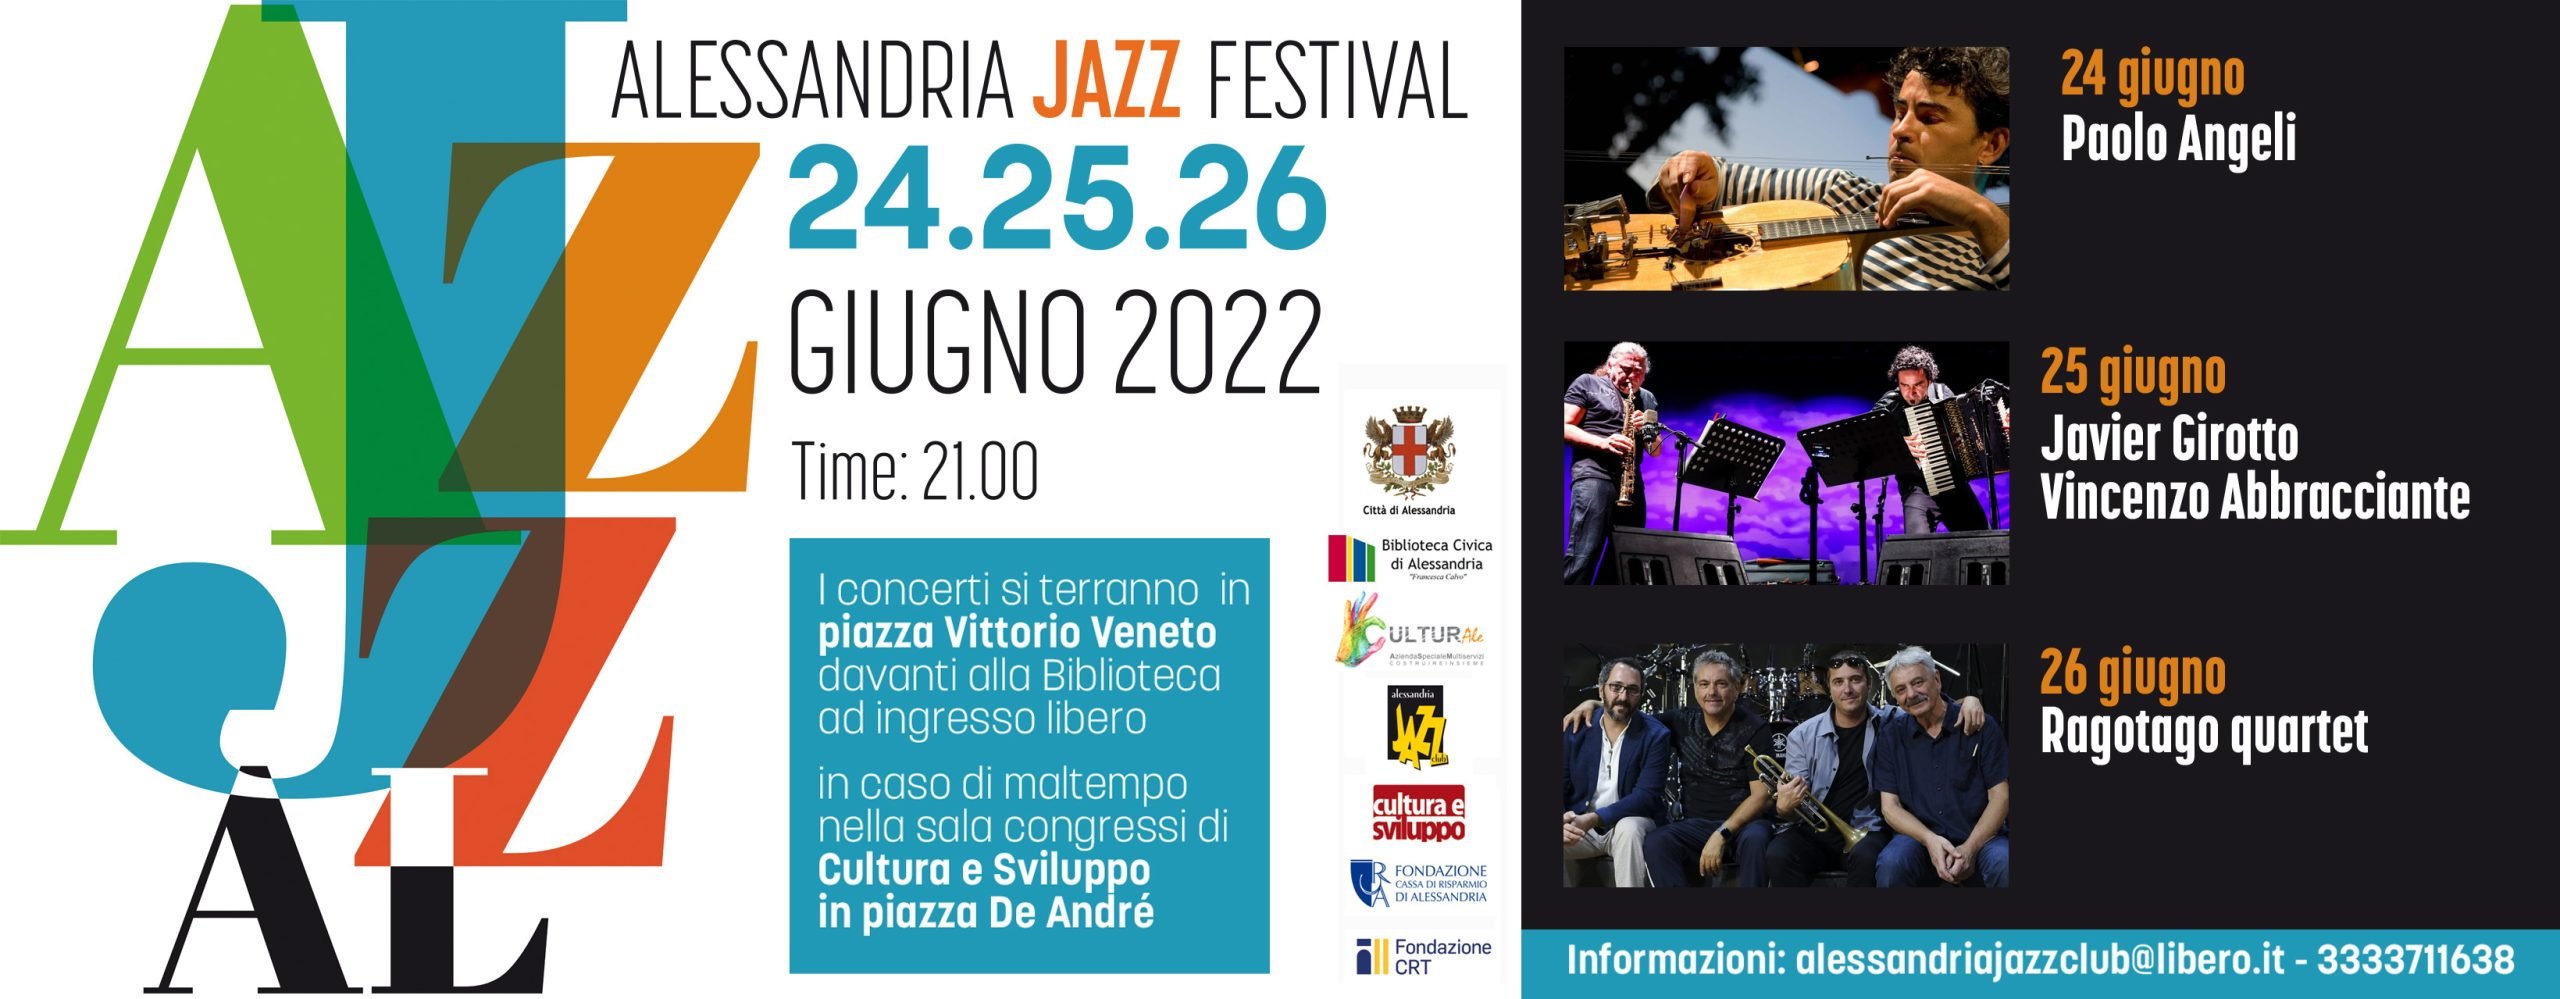 Dal 24 al 26 giugno Alessandria suona a ritmo jazz con JazzAl2022